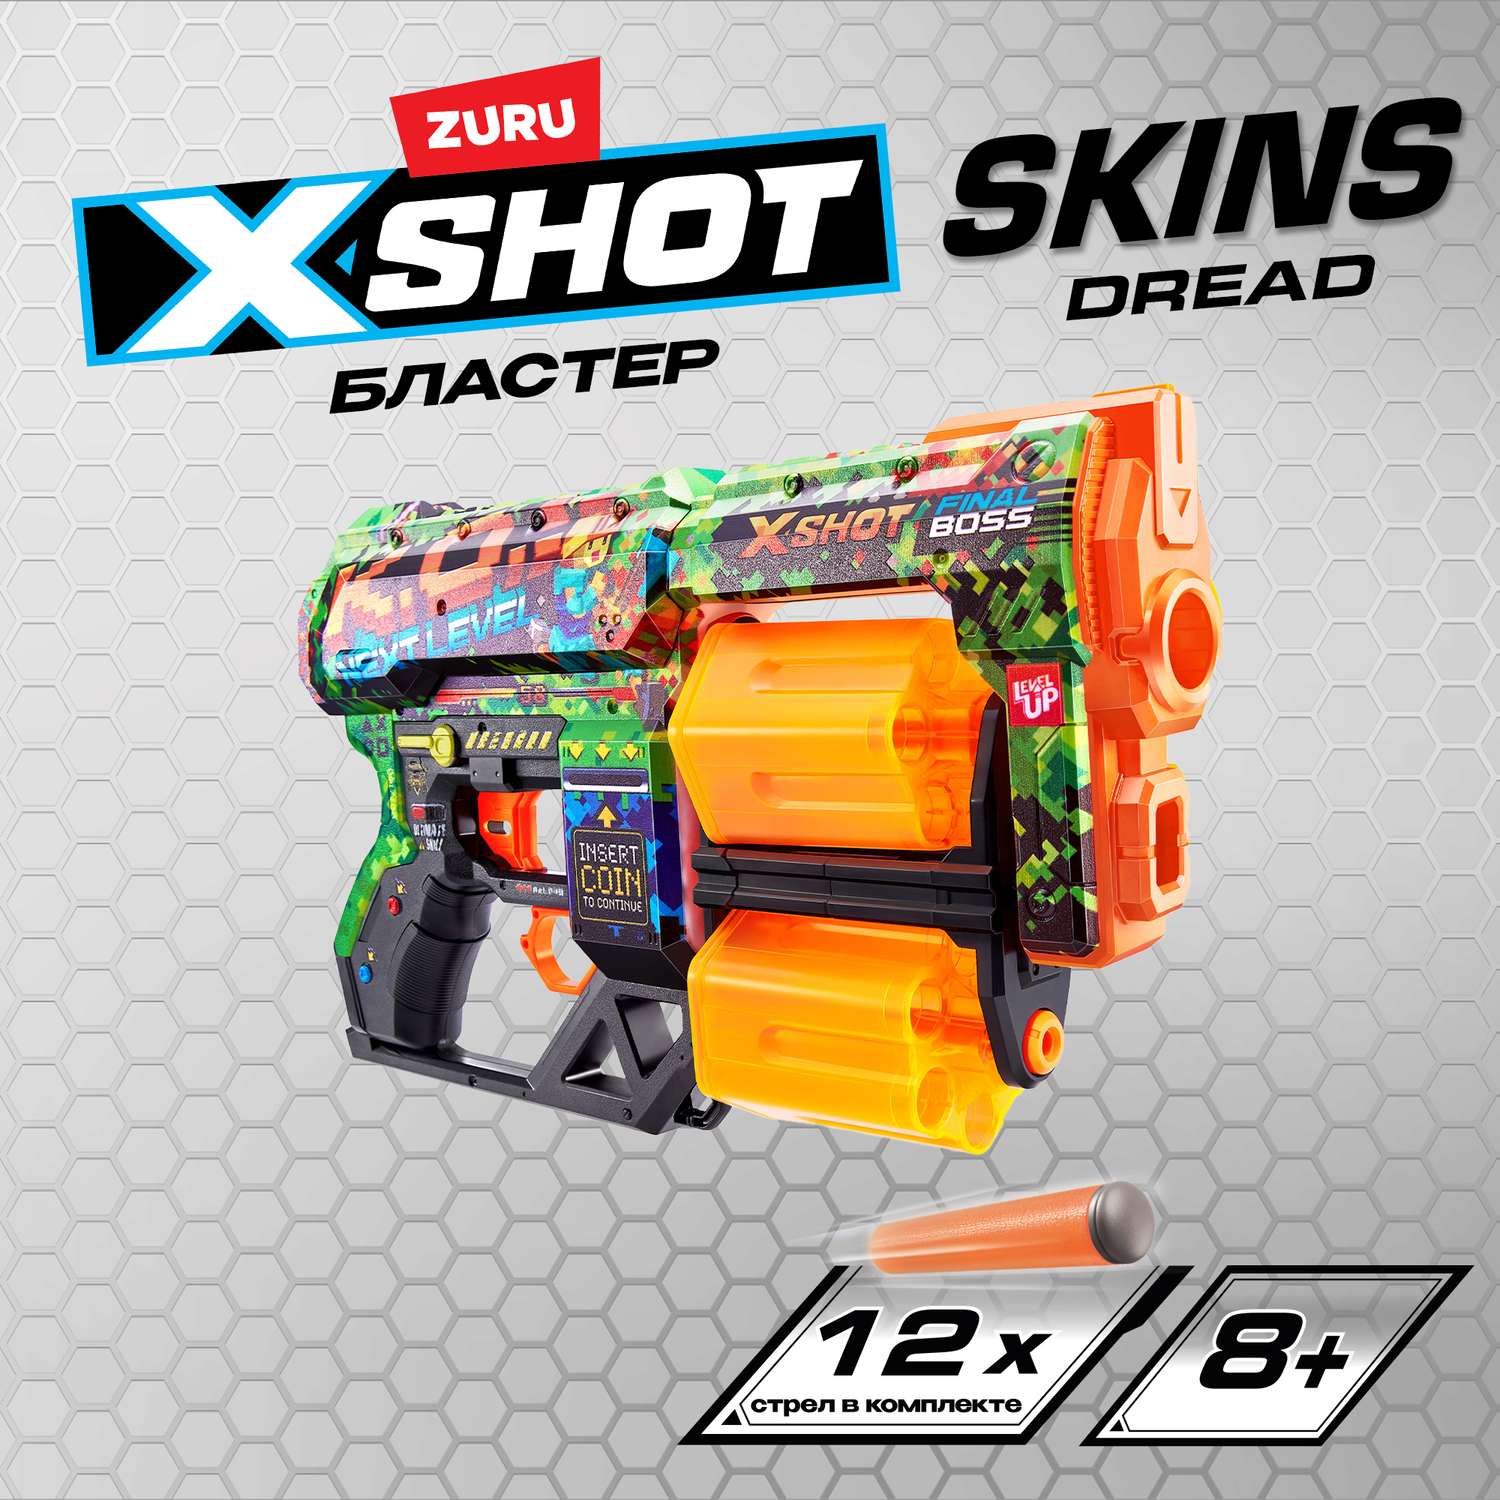 Набор для стрельбы X-SHOT  Скинс дред 36517B - фото 1